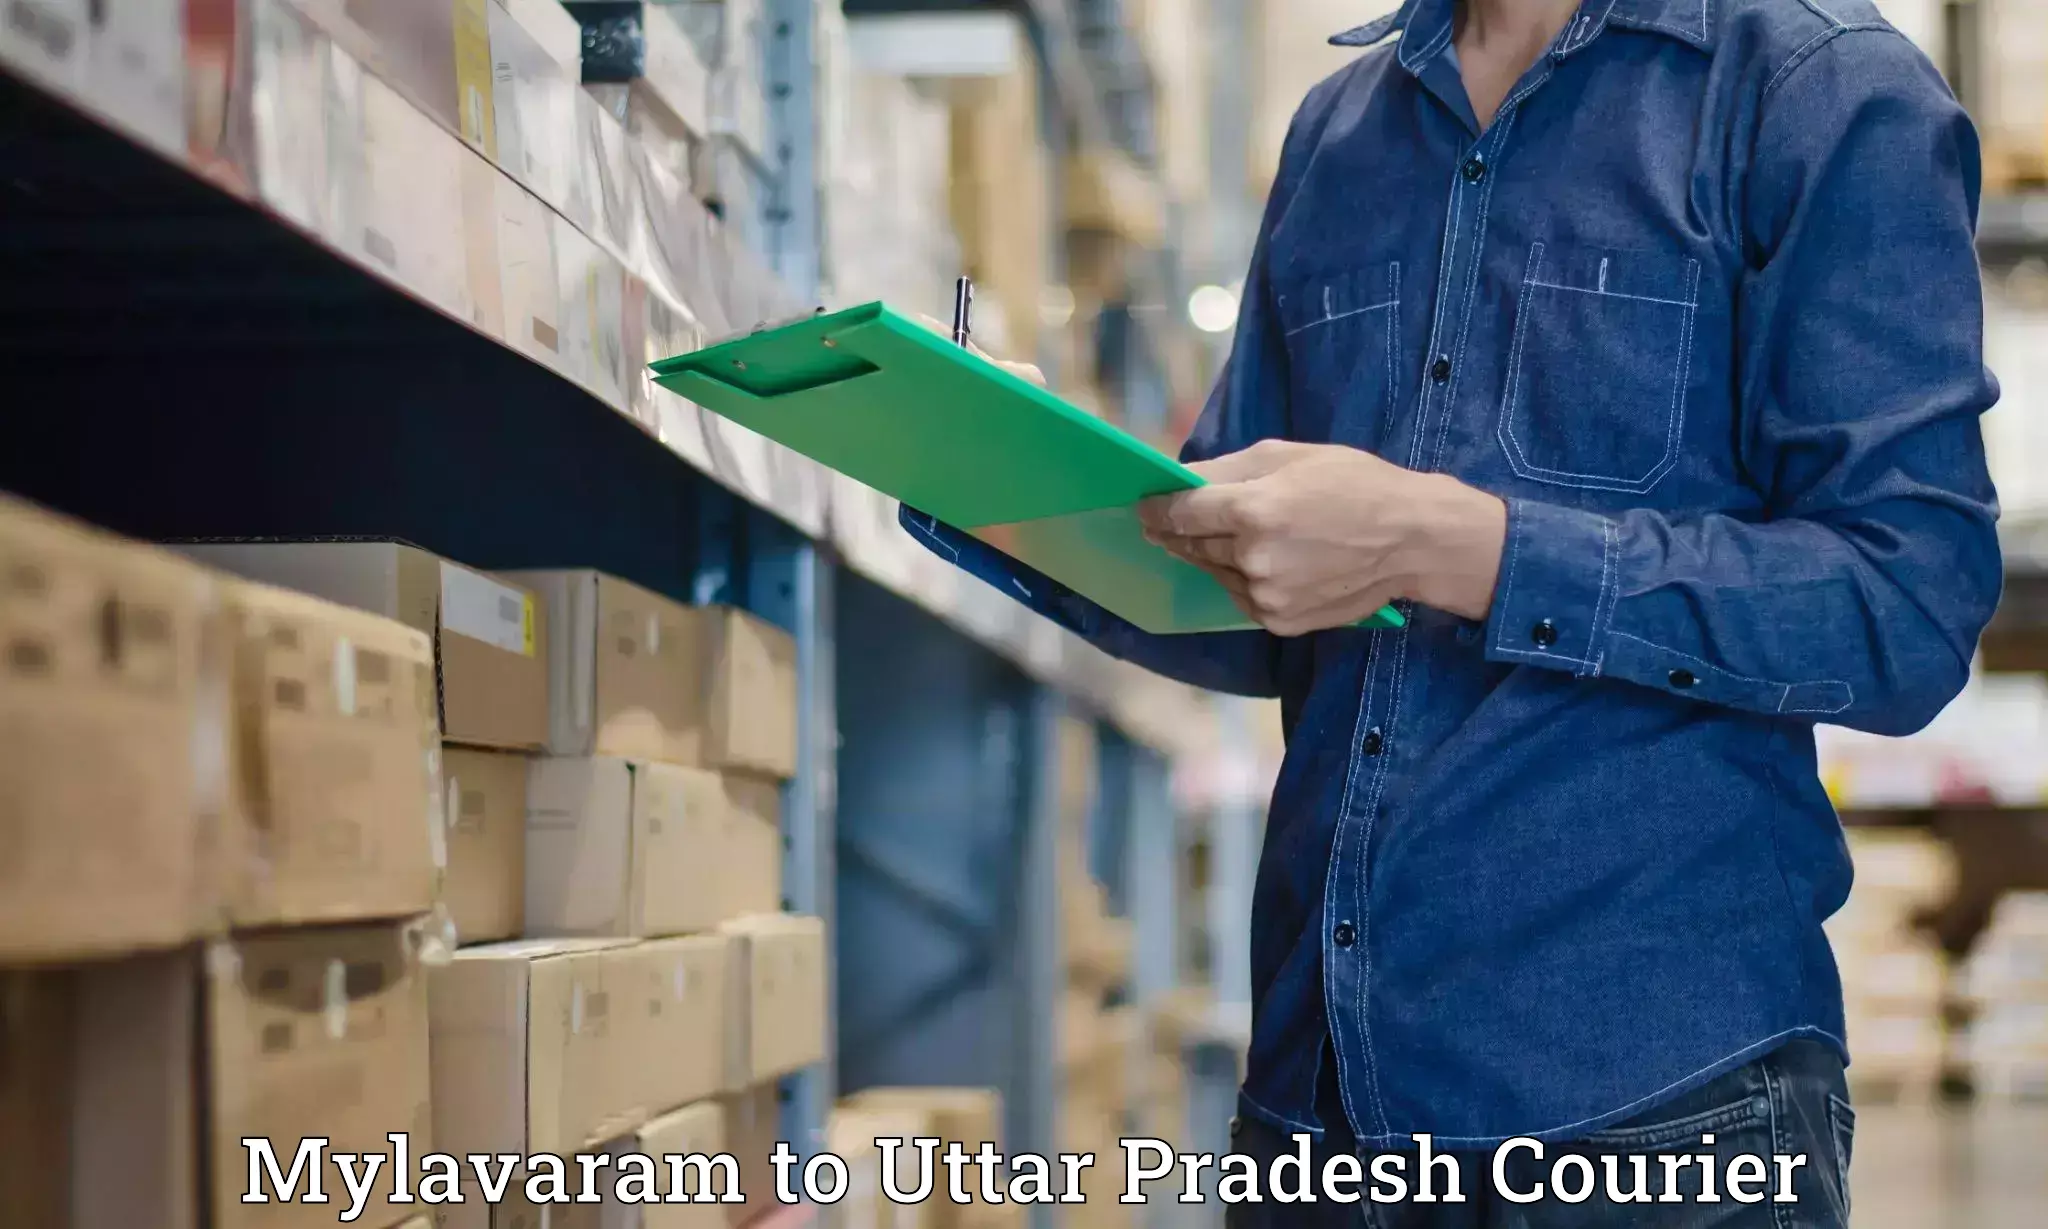 Cargo delivery service Mylavaram to Uttar Pradesh